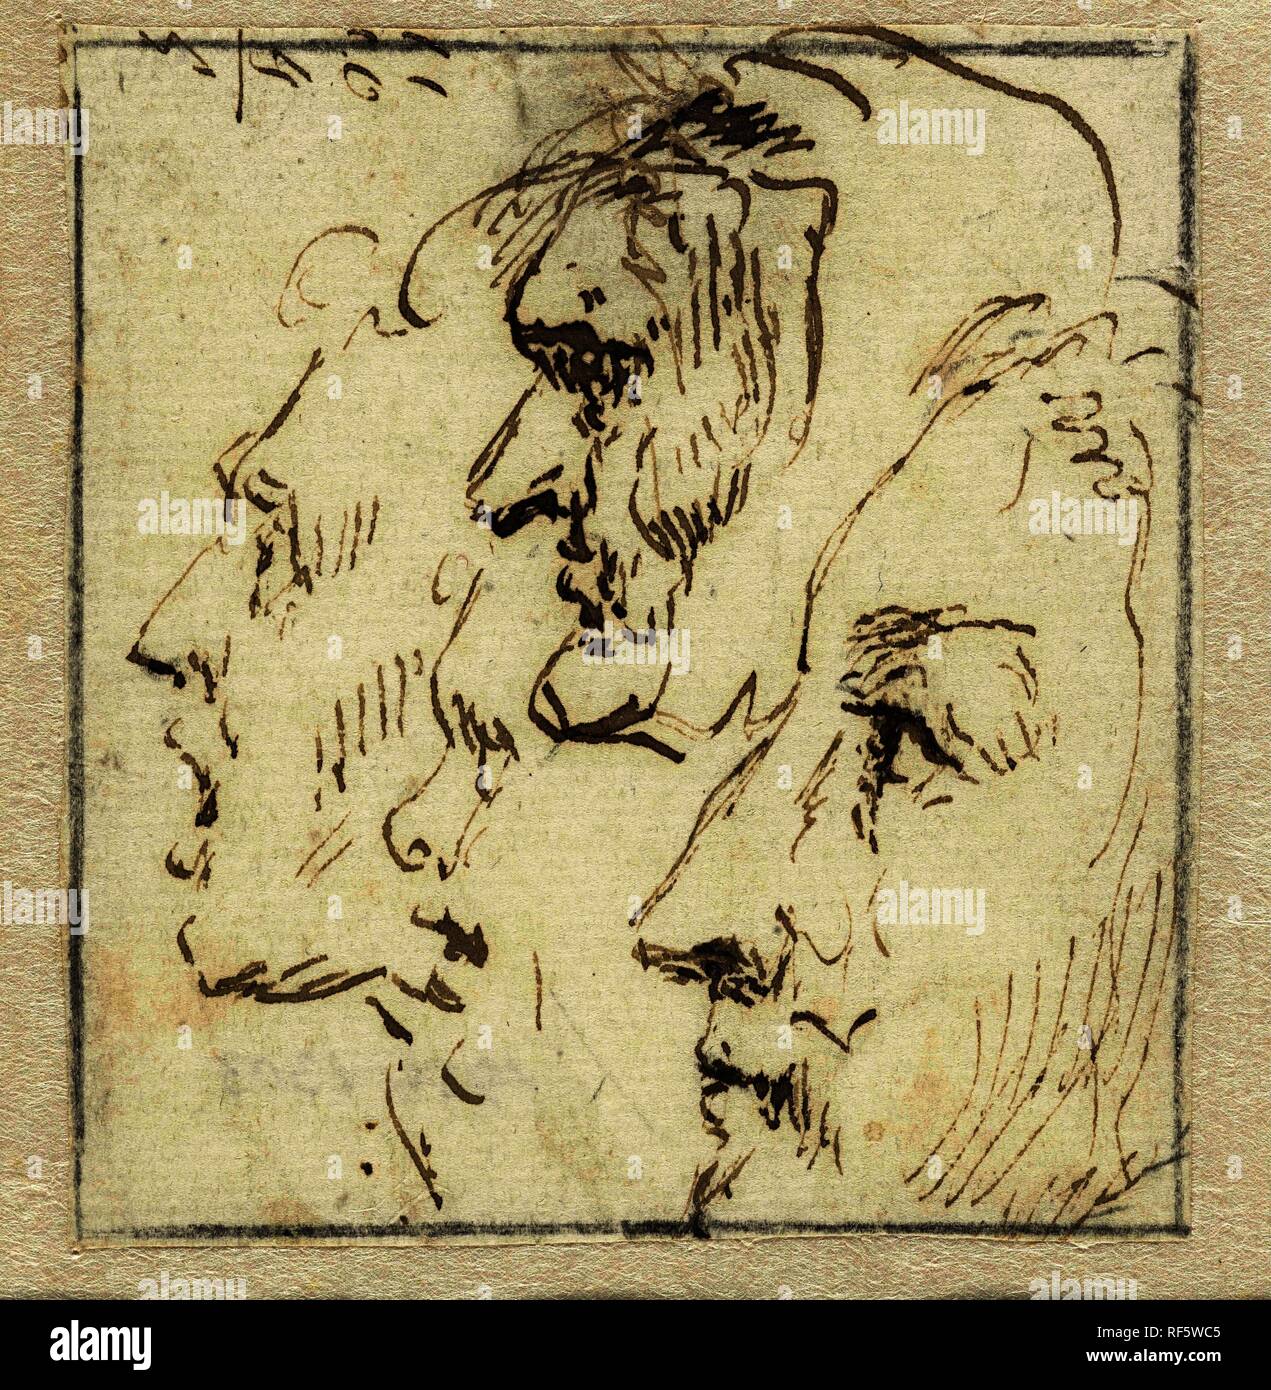 Lo studio di espressione di quattro facce. Relatore per parere: anonimo. Dating: 1600 - 1699. Misurazioni: h 69 mm × W 64 mm. Museo: Rijksmuseum Amsterdam. Foto Stock